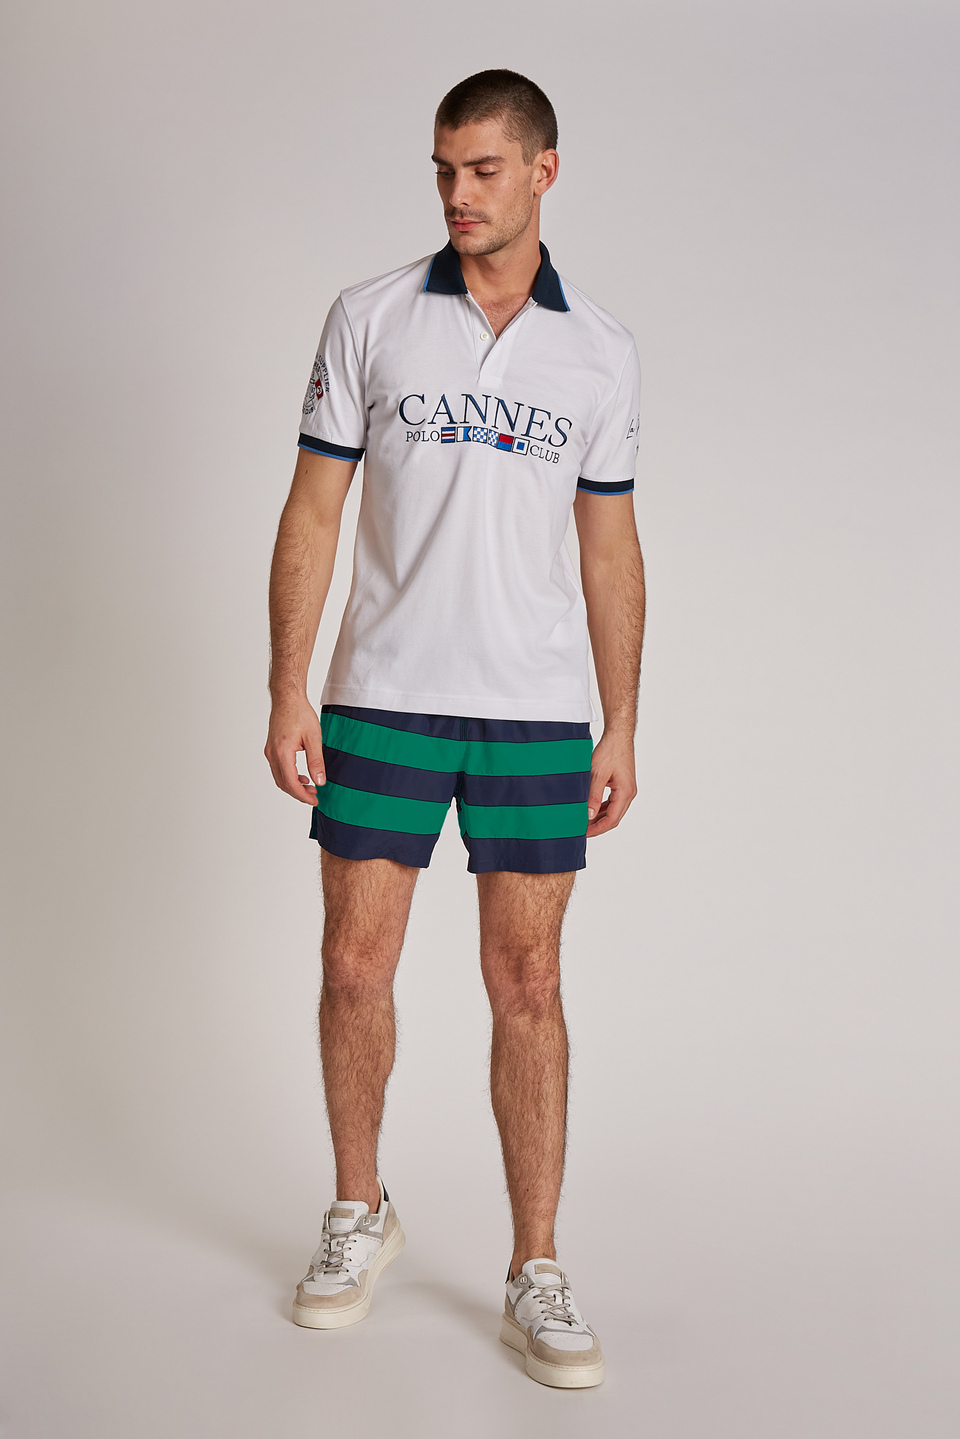 Regular-fit drawstring-embellished microfibre swim shorts | La Martina - Official Online Shop